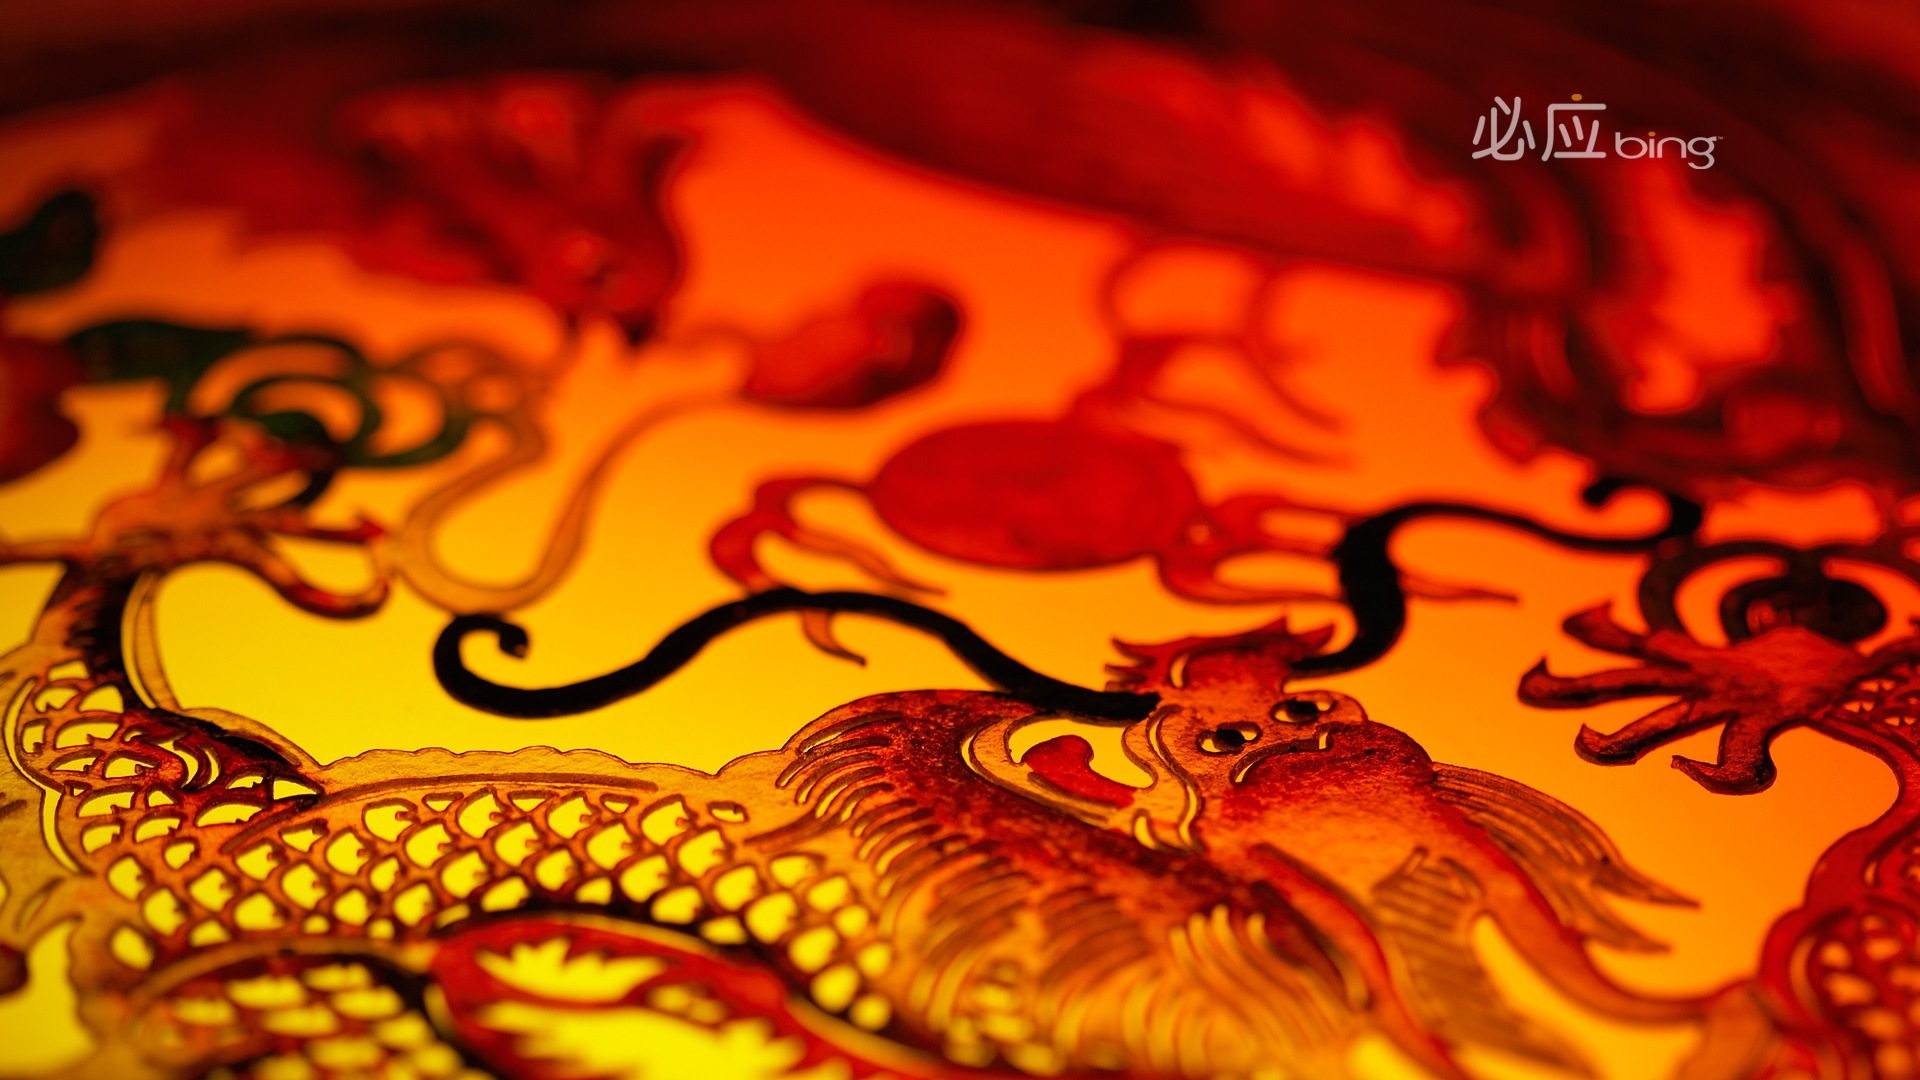 Bing Auswahl besten HD Wallpaper: China theme wallpaper (2) #12 - 1920x1080